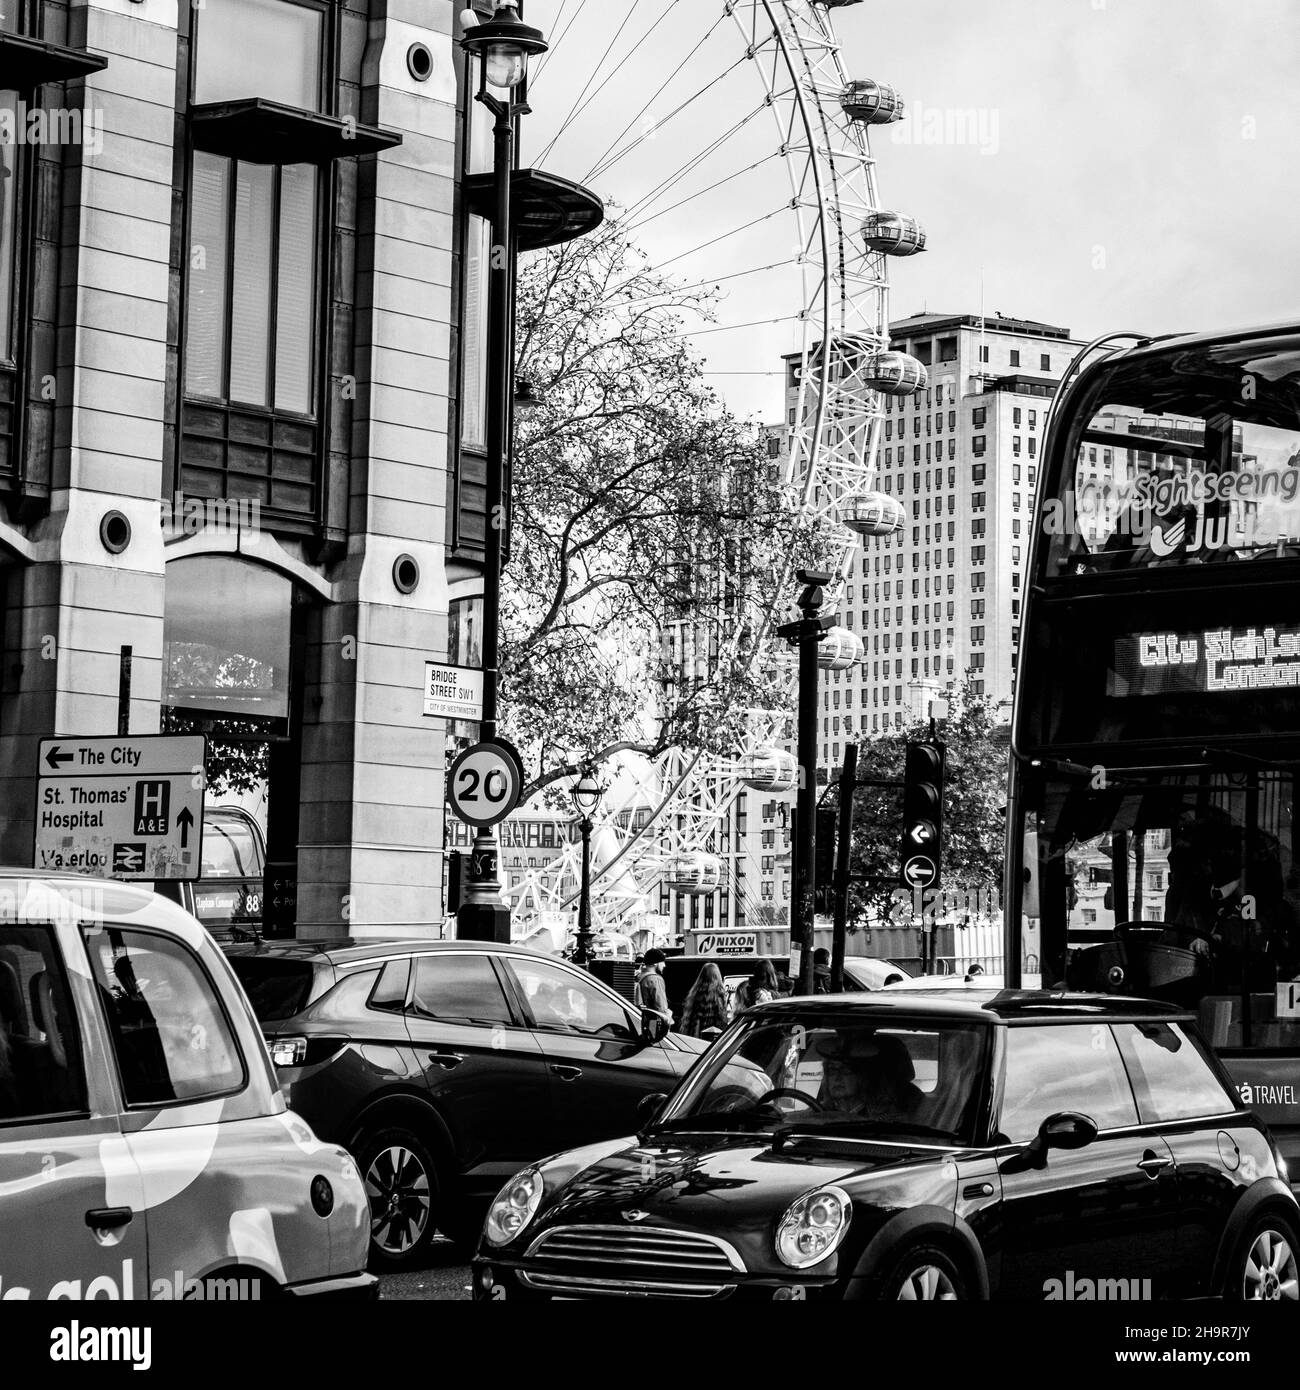 Centre de Londres Royaume-Uni novembre 21 2021, The London Eye ou Millennium Wheel Toursit attraction South Bank Londres Banque D'Images